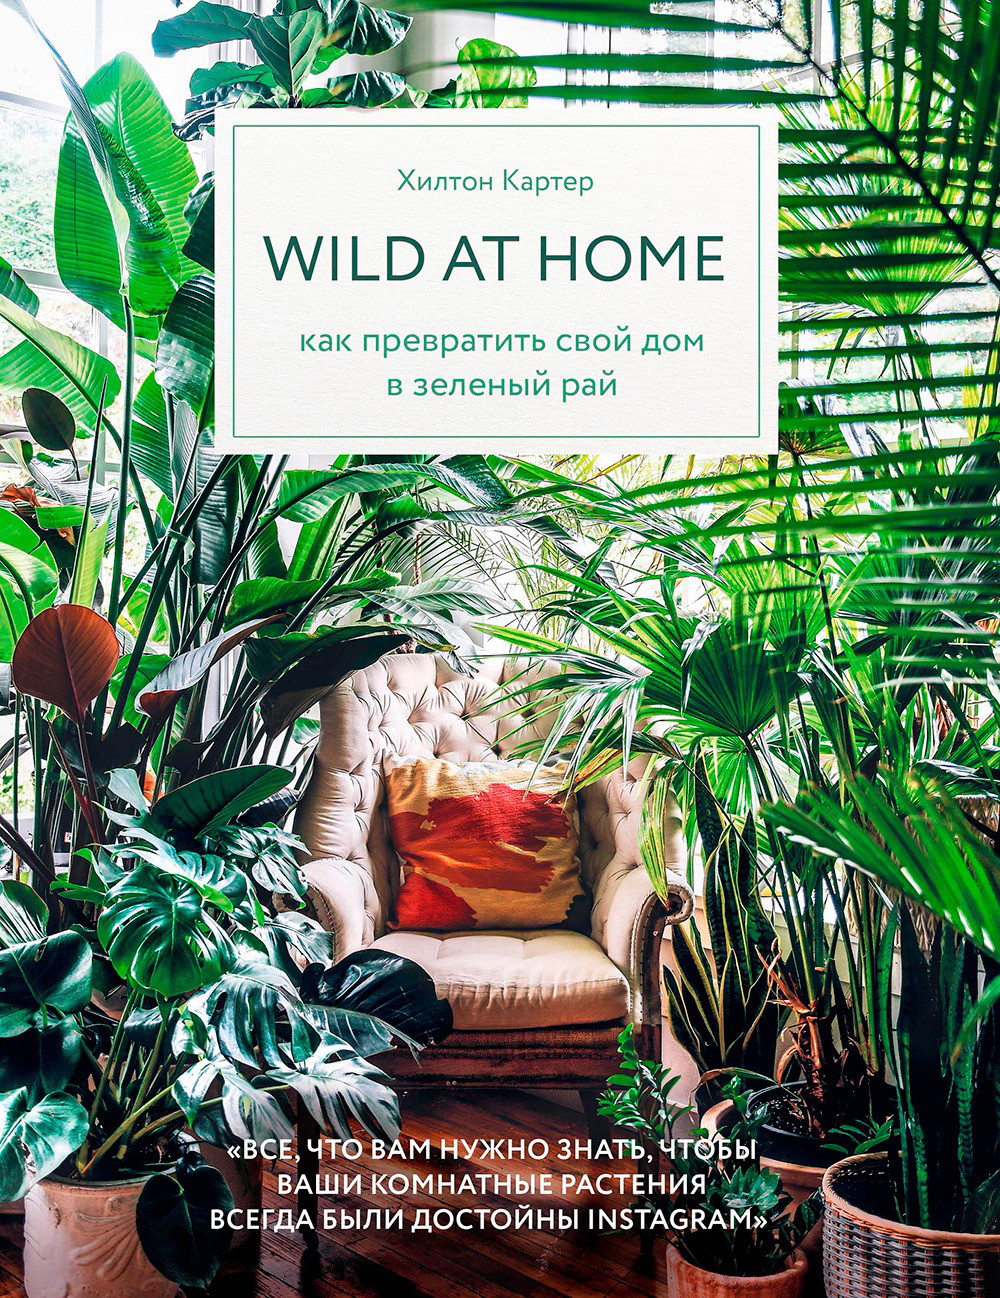 Wild at home (как превратить свой дом в зеленый рай)